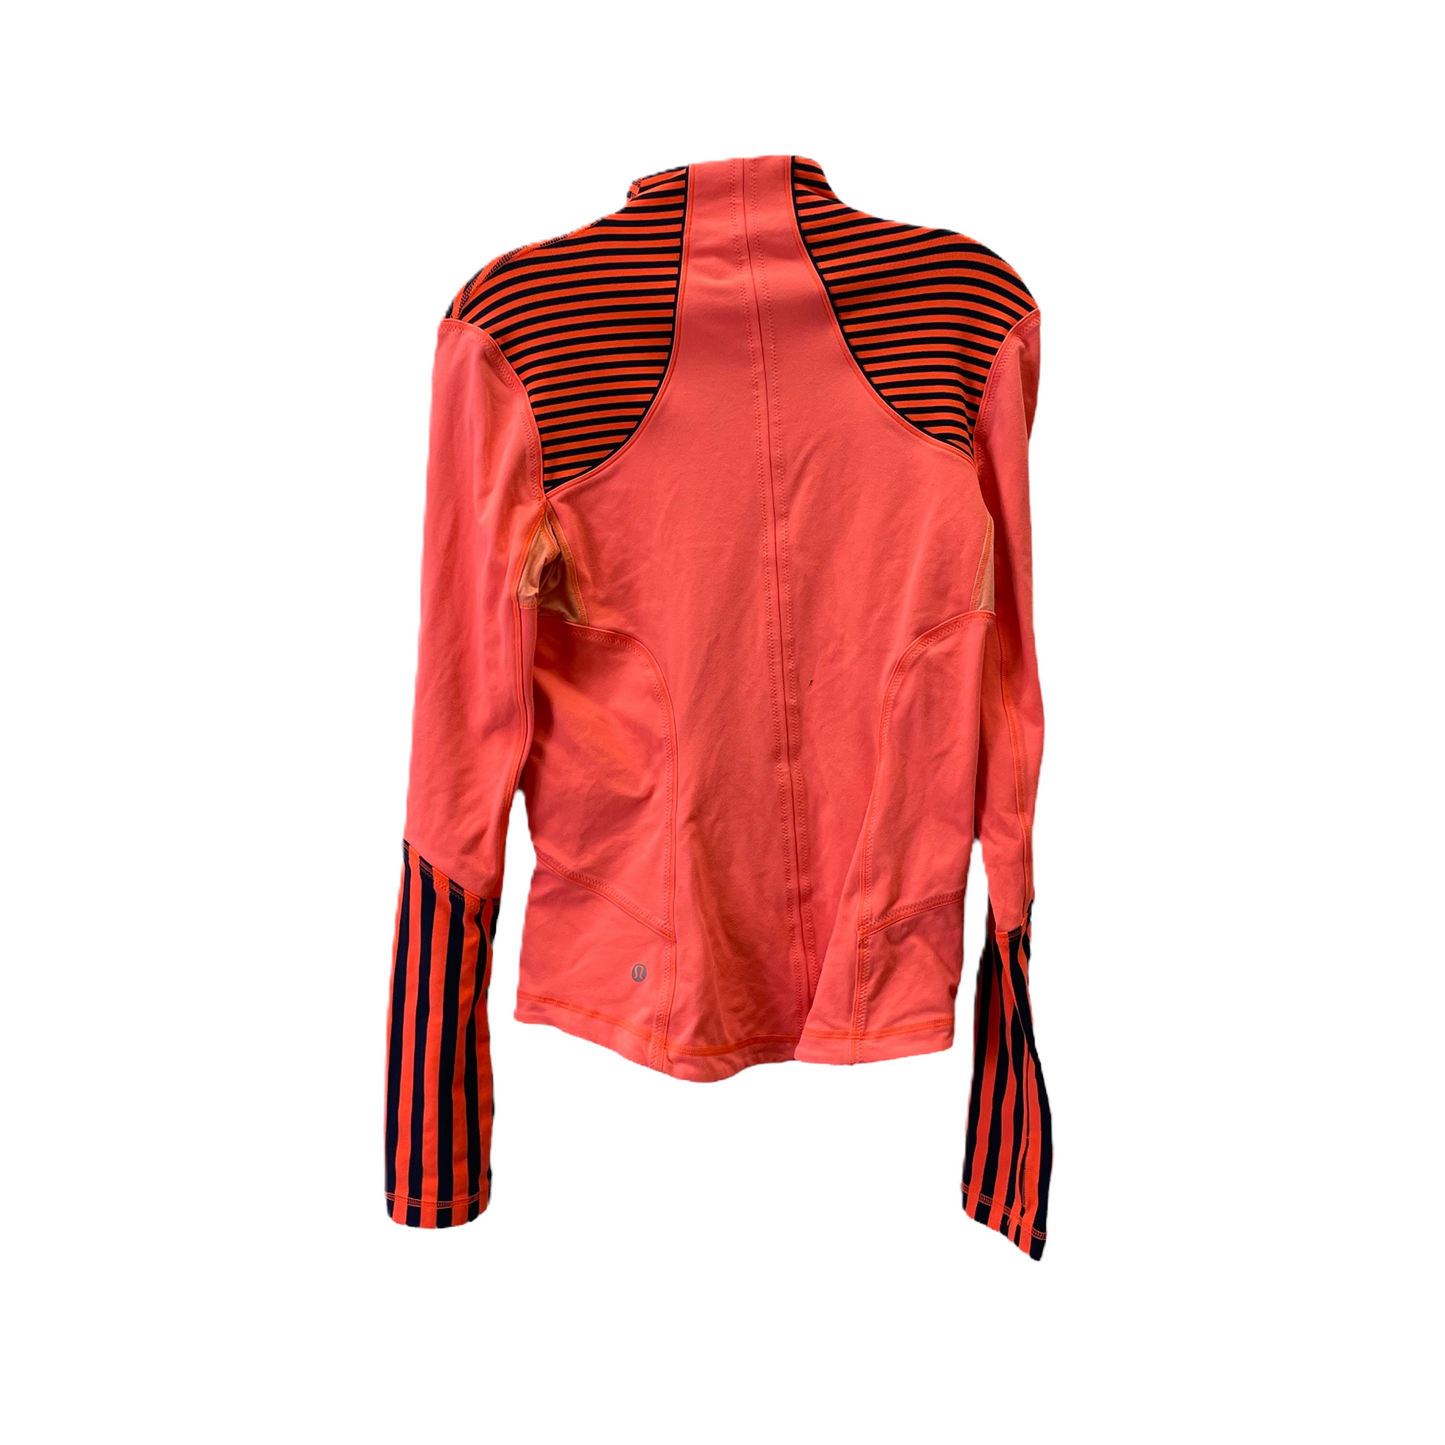 Pink Athletic Jacket By Lululemon, Size: M